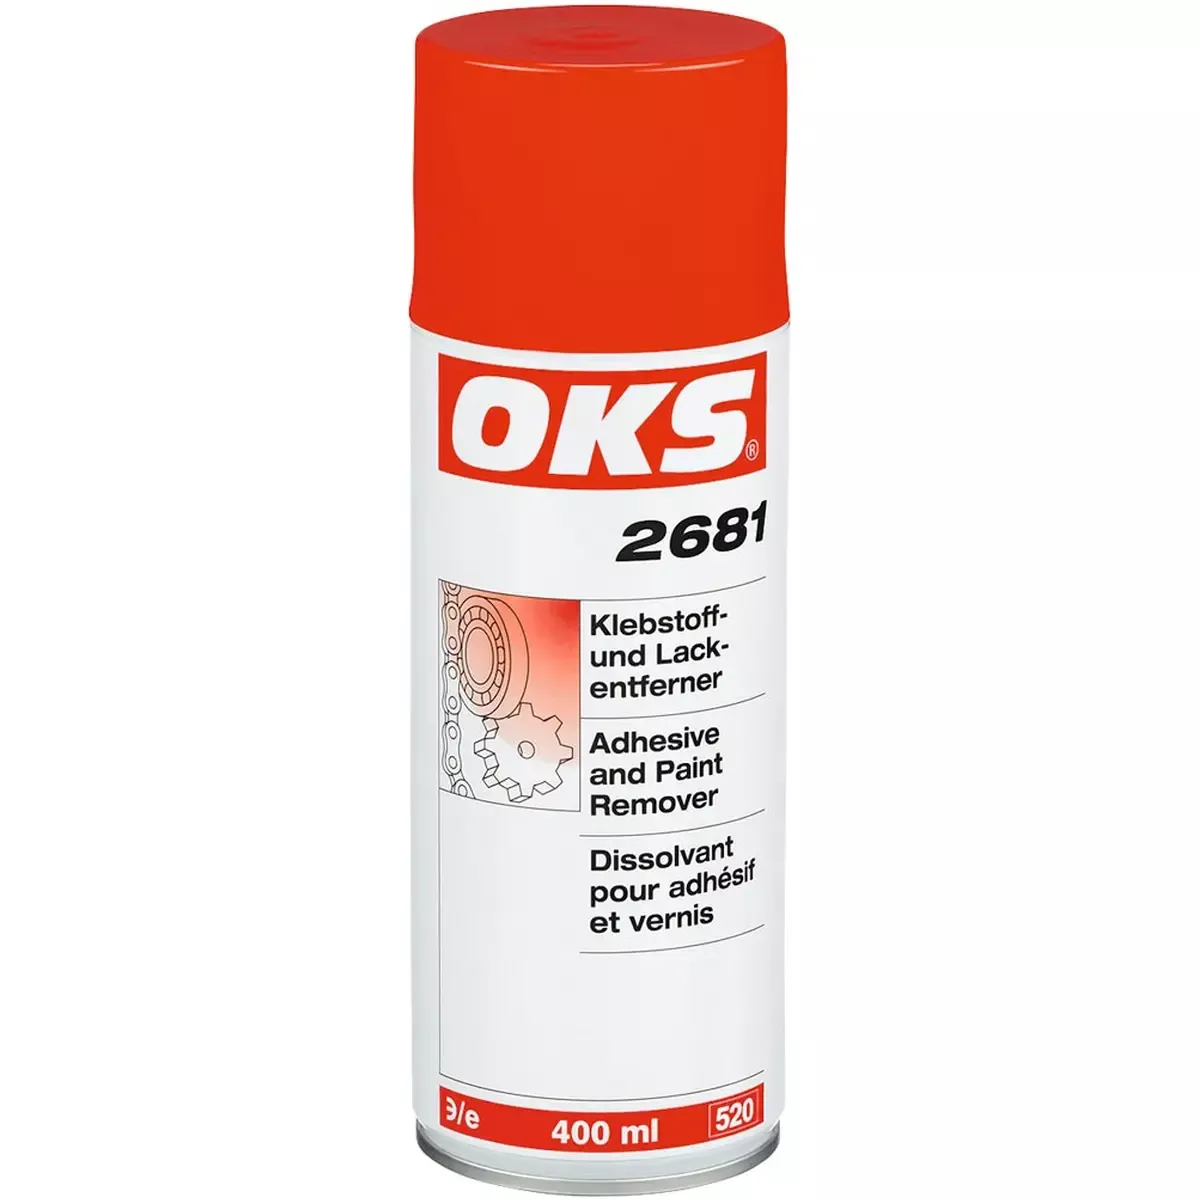 OKS 2681 Klebstoff- und Lackentferner, 400 ml Spray